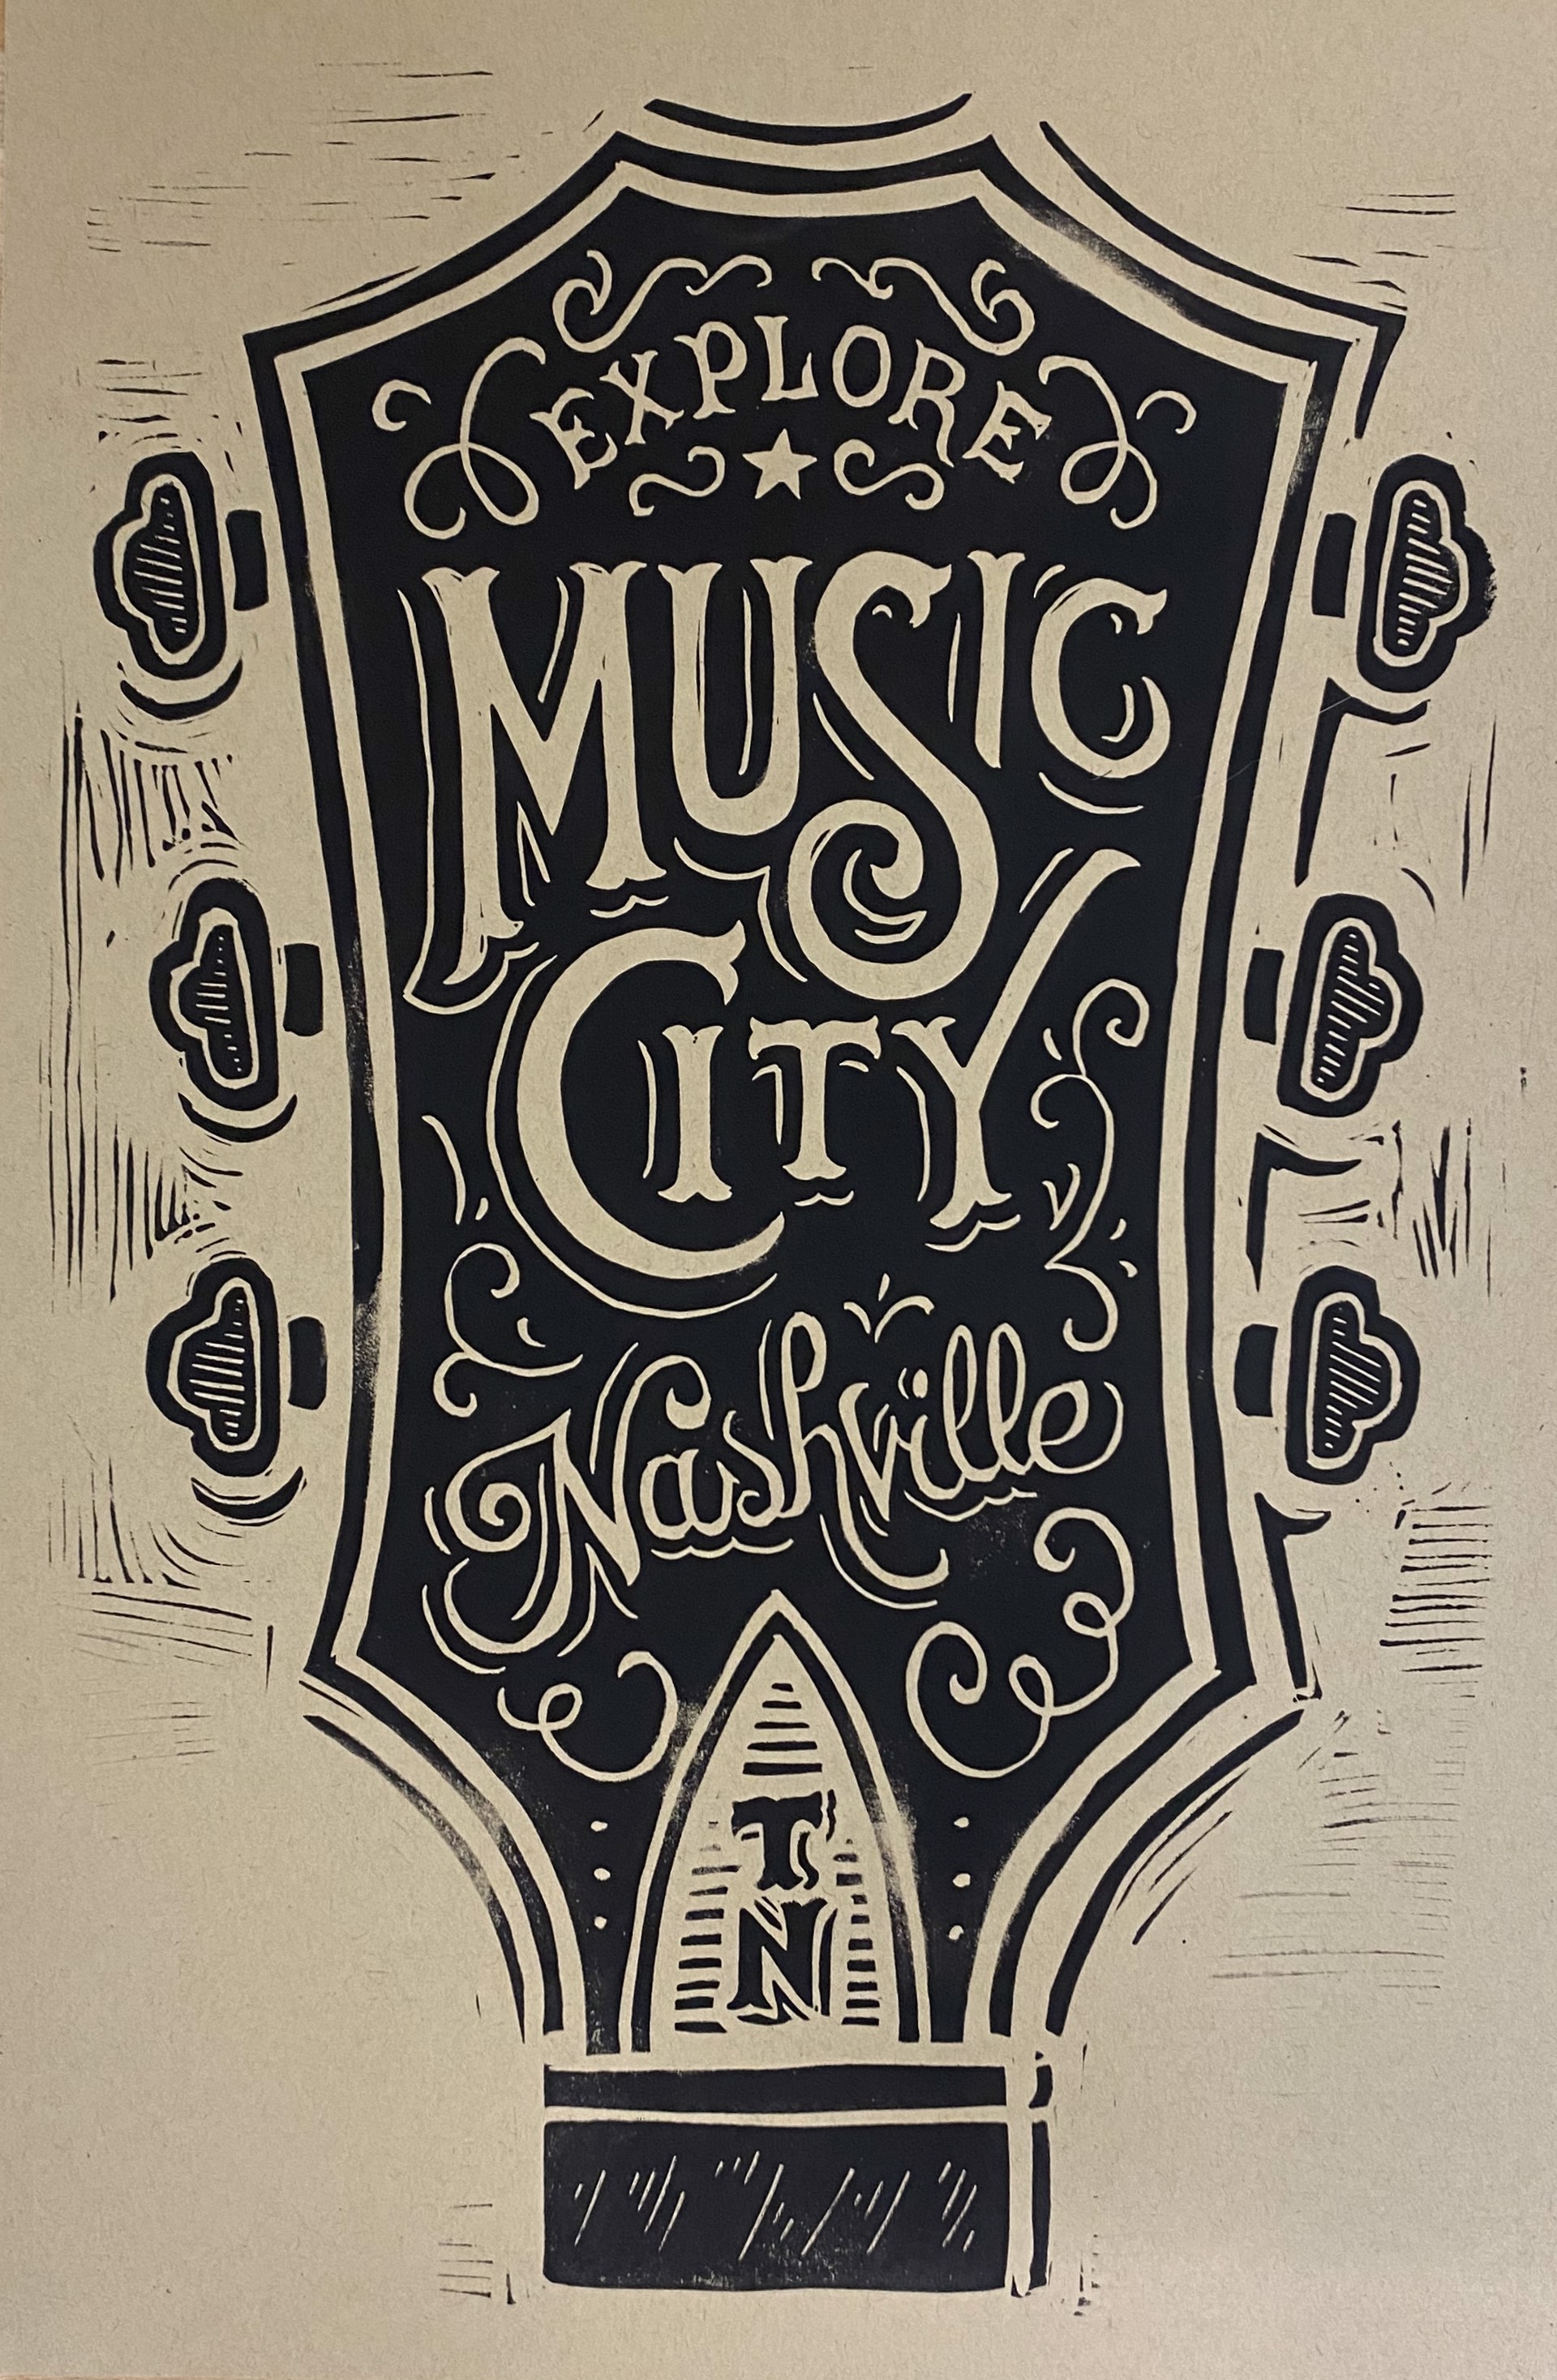 Explore Music City (Craft) by Derrick Castle